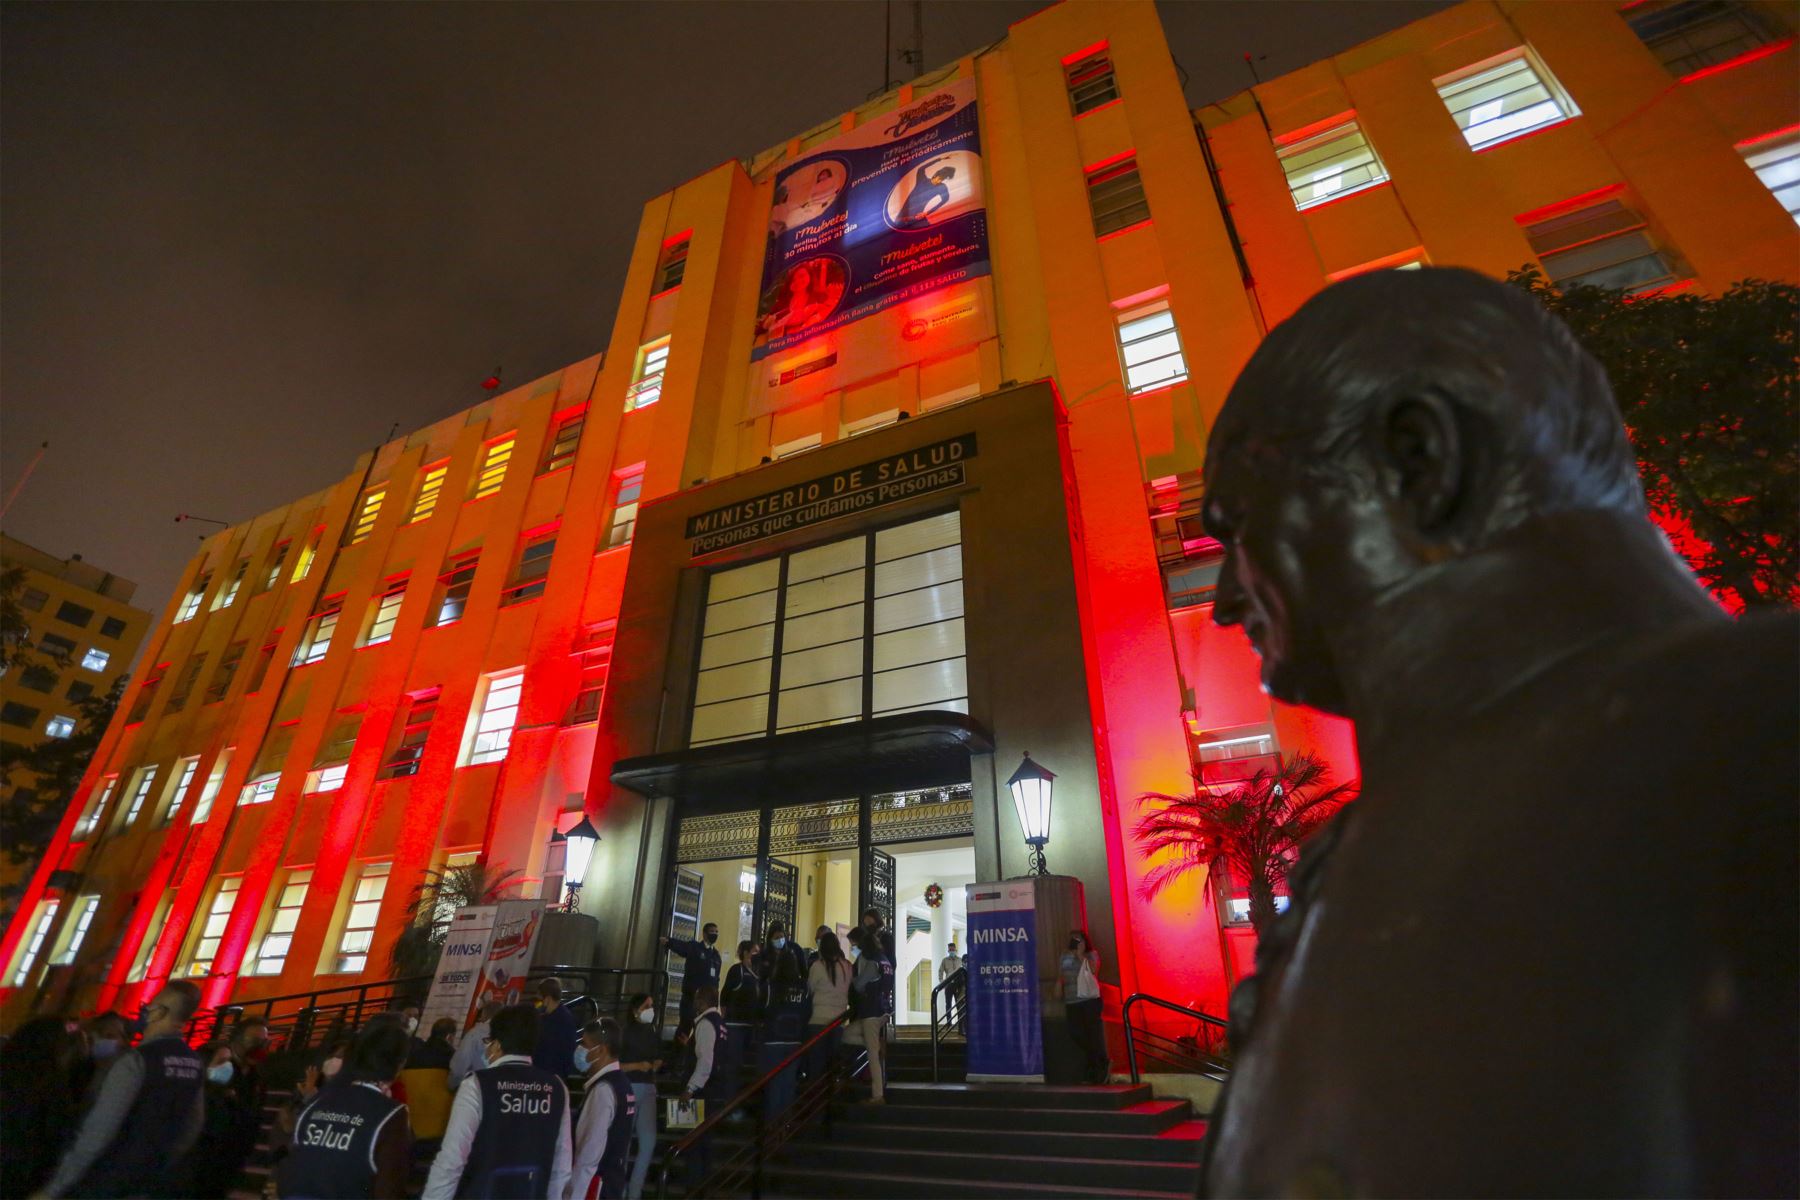 Sede del Ministerio de Salud y diversas instituciones públicas se iluminaron de rojo en conmemoración del Día Mundial de Lucha contra el Sida.
Foto: Minsa